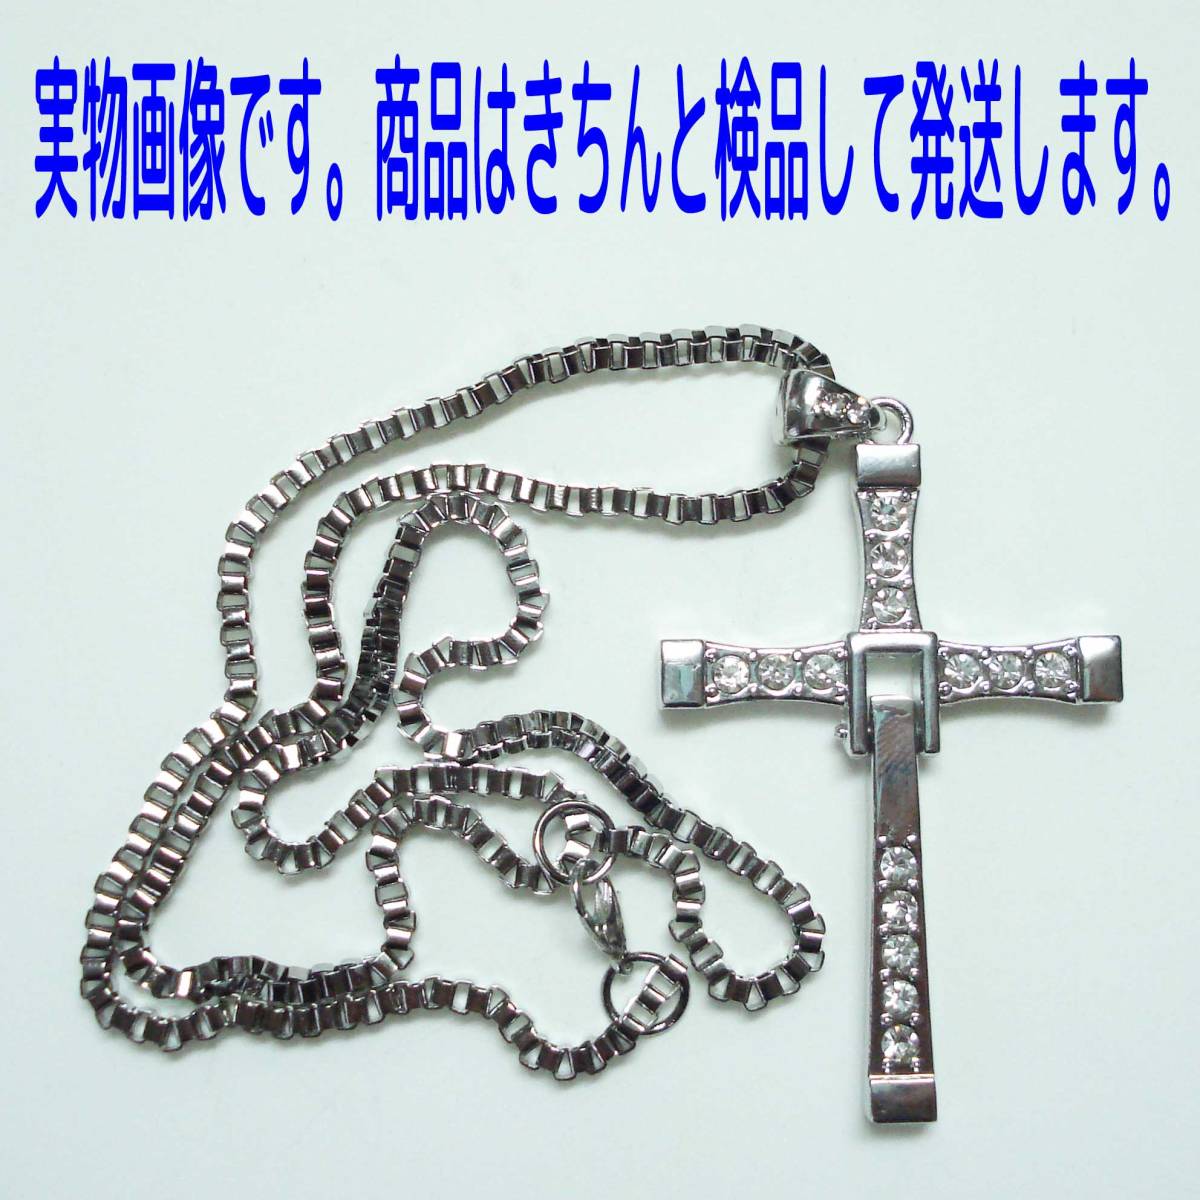 クロスネックレス 十字架 ビッグサイズ 原寸大1:1 ワイルドスピード ネックレス